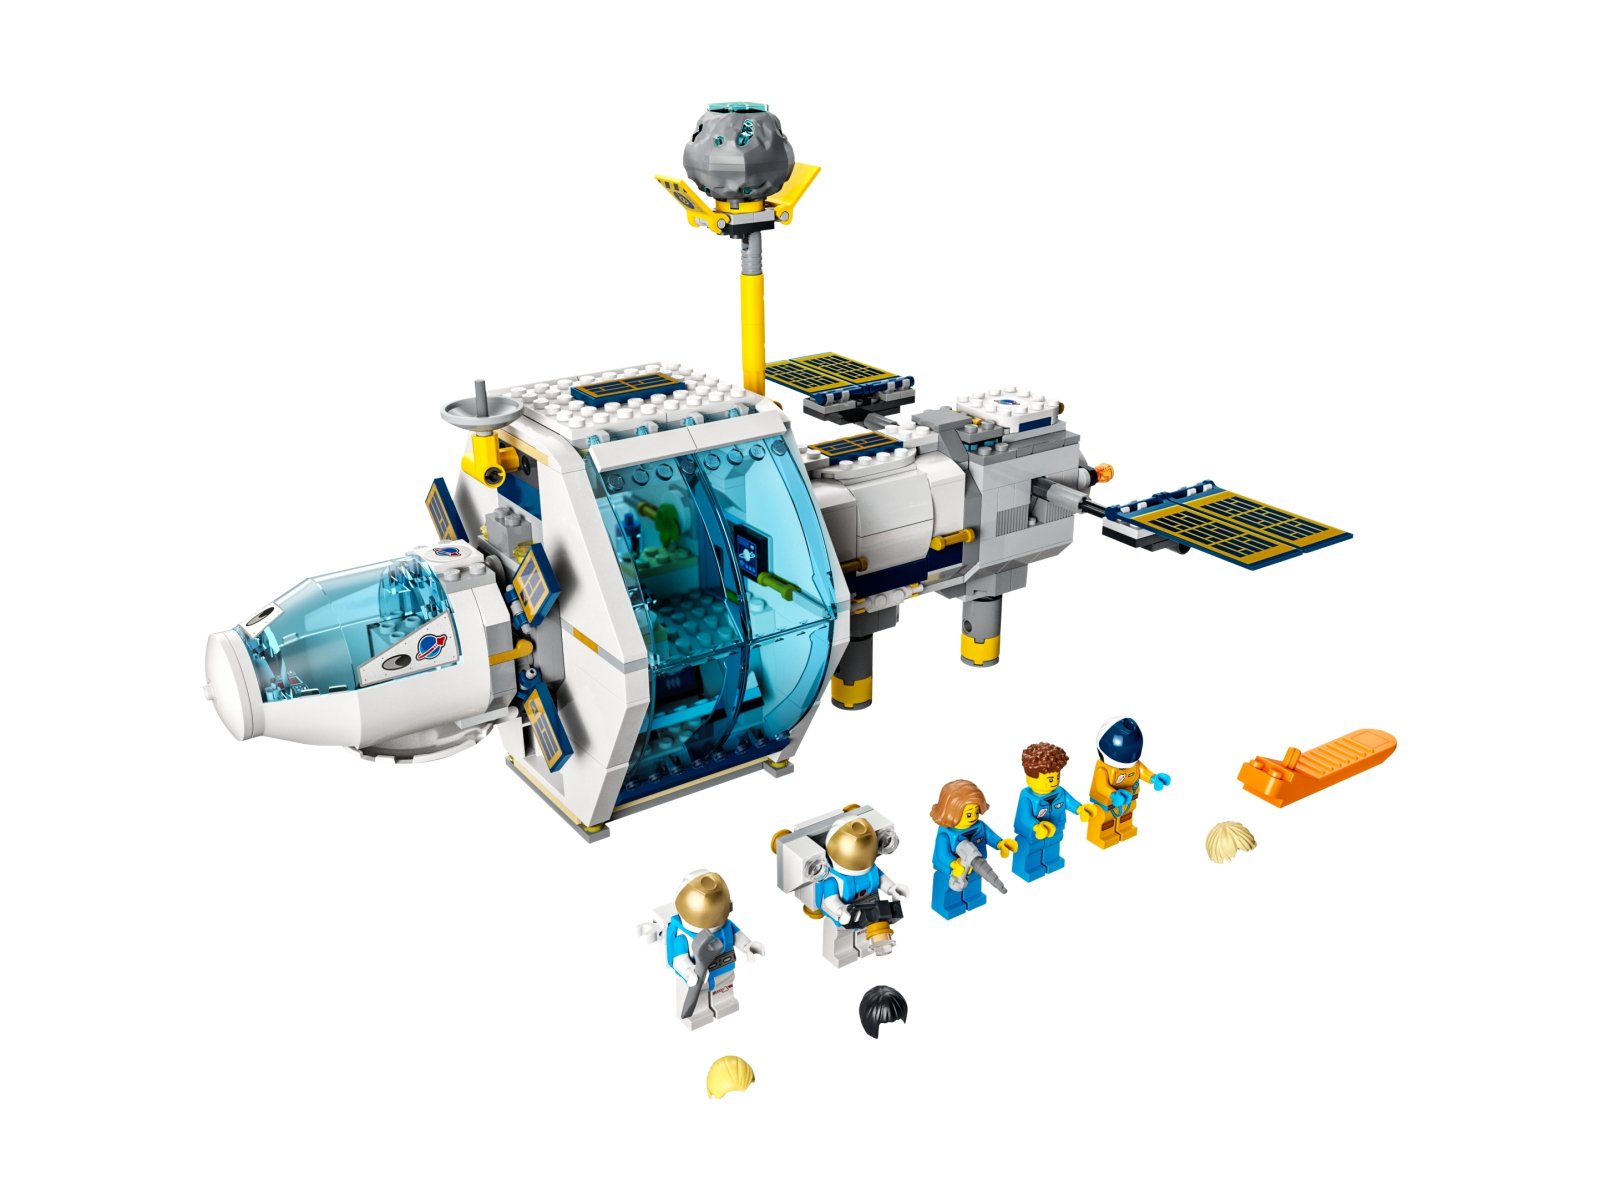 LEGO 60349 Stacja kosmiczna na Księżycu